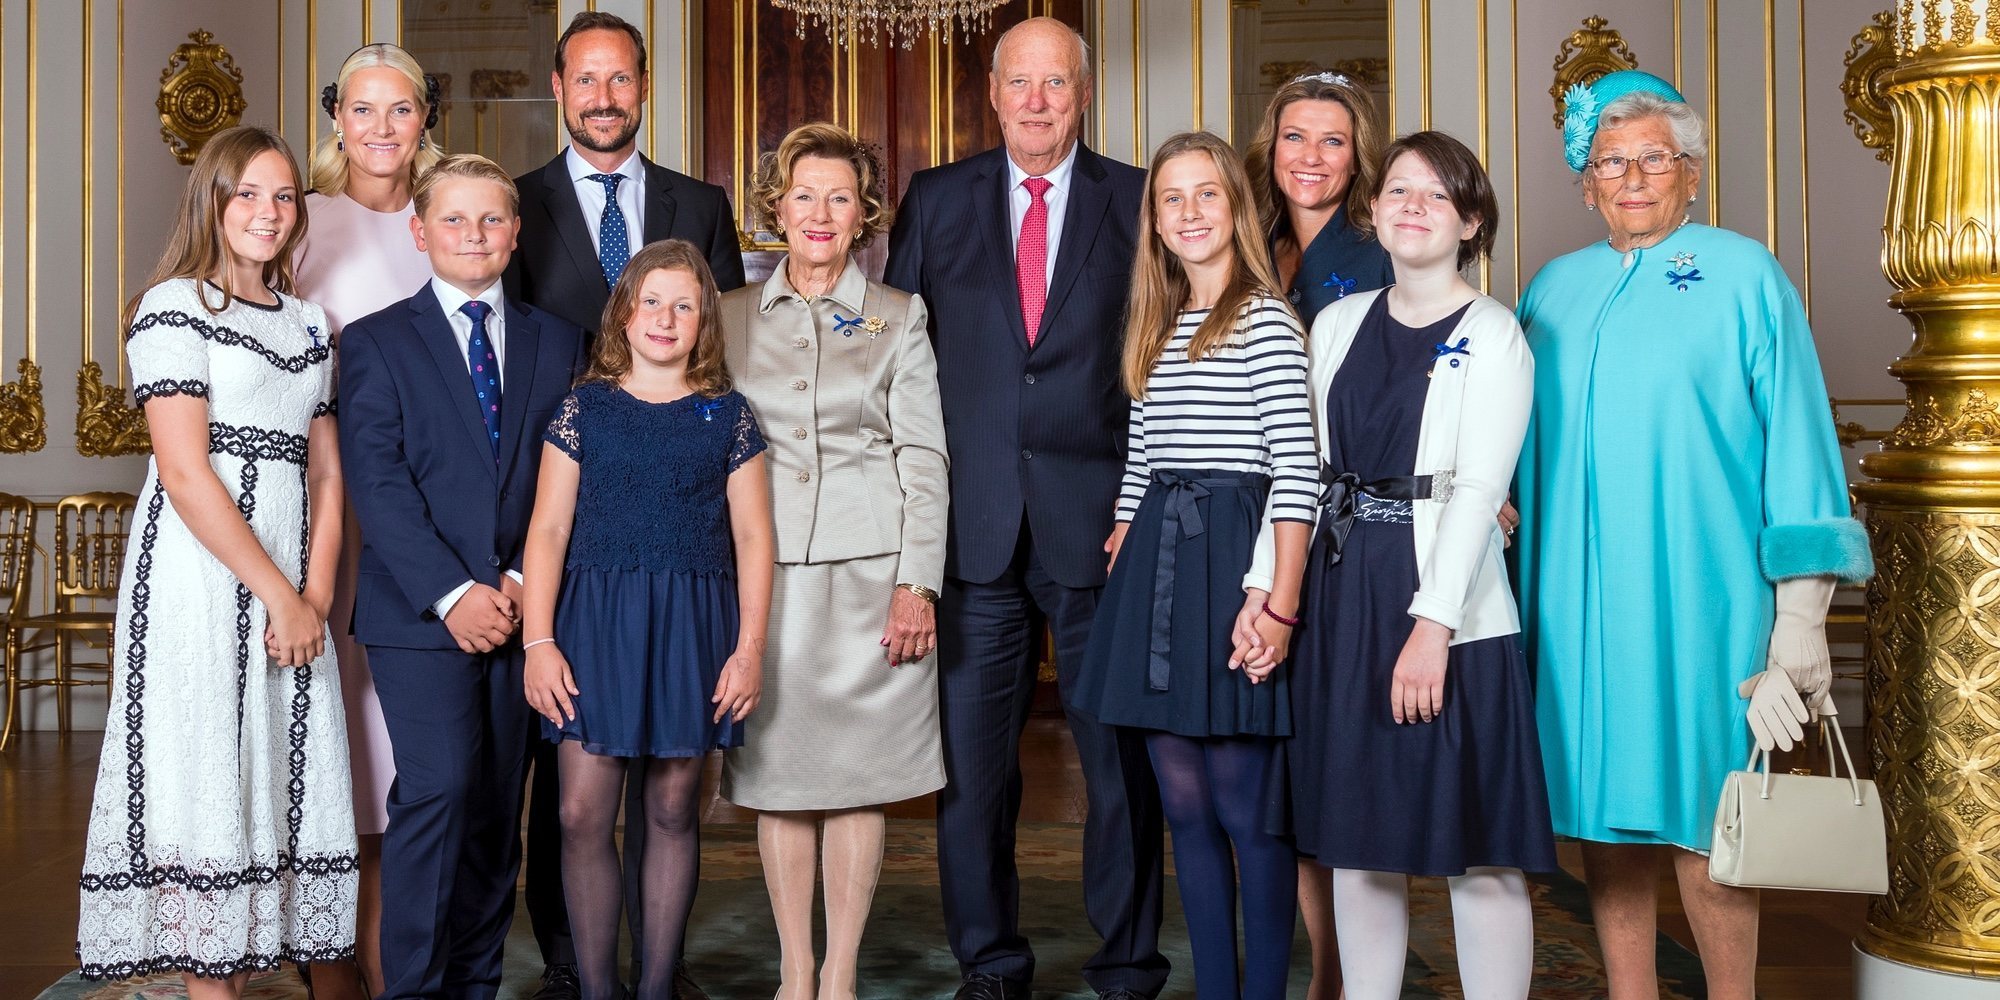 Las Bodas de Oro de Harald y Sonia de Noruega: renovación de votos y reunión con toda la Familia Real